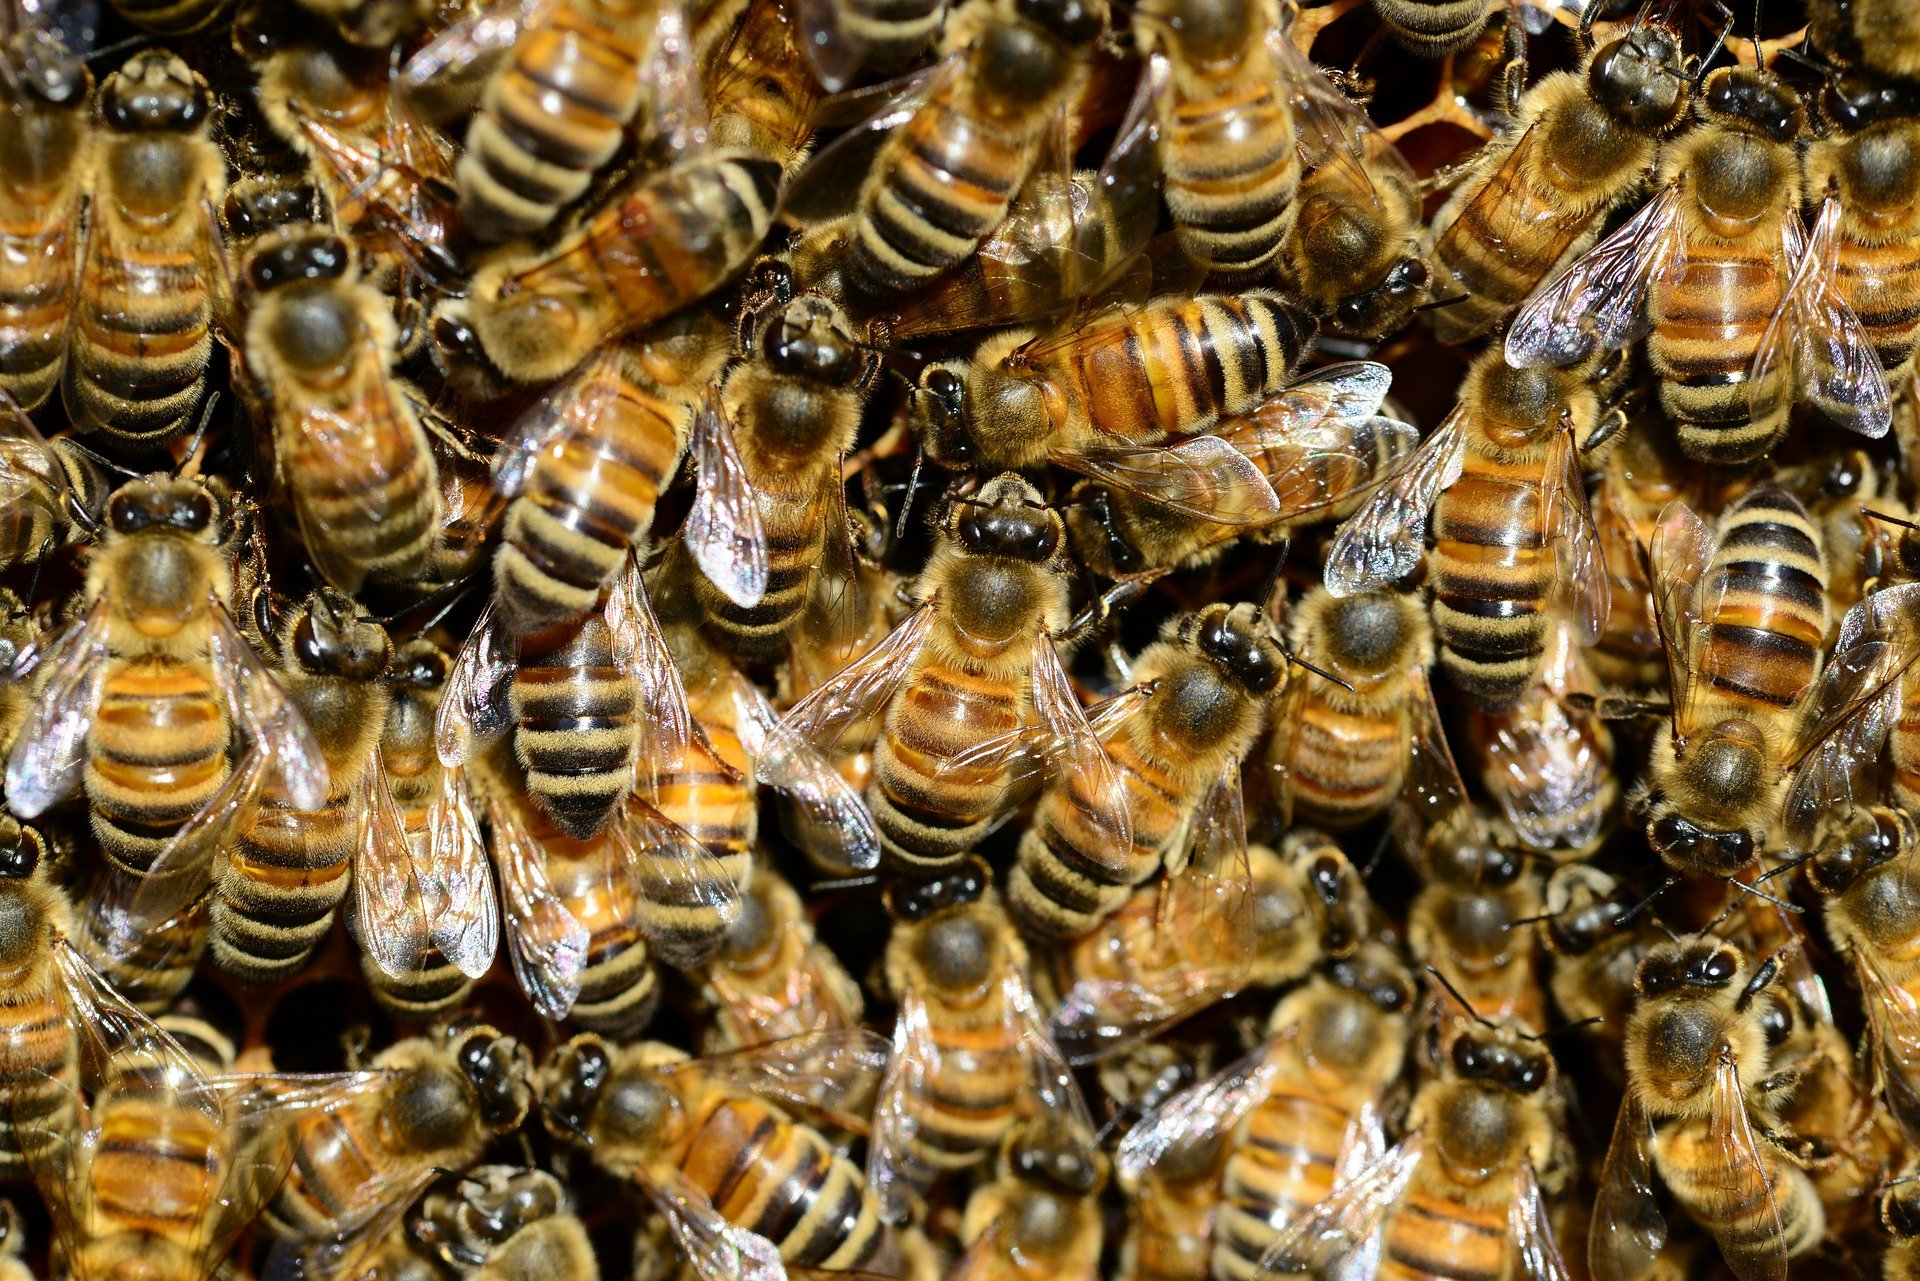 Na autě ji sedělo 20 tisíc včel, šokující příčina byla nalezena uvnitř